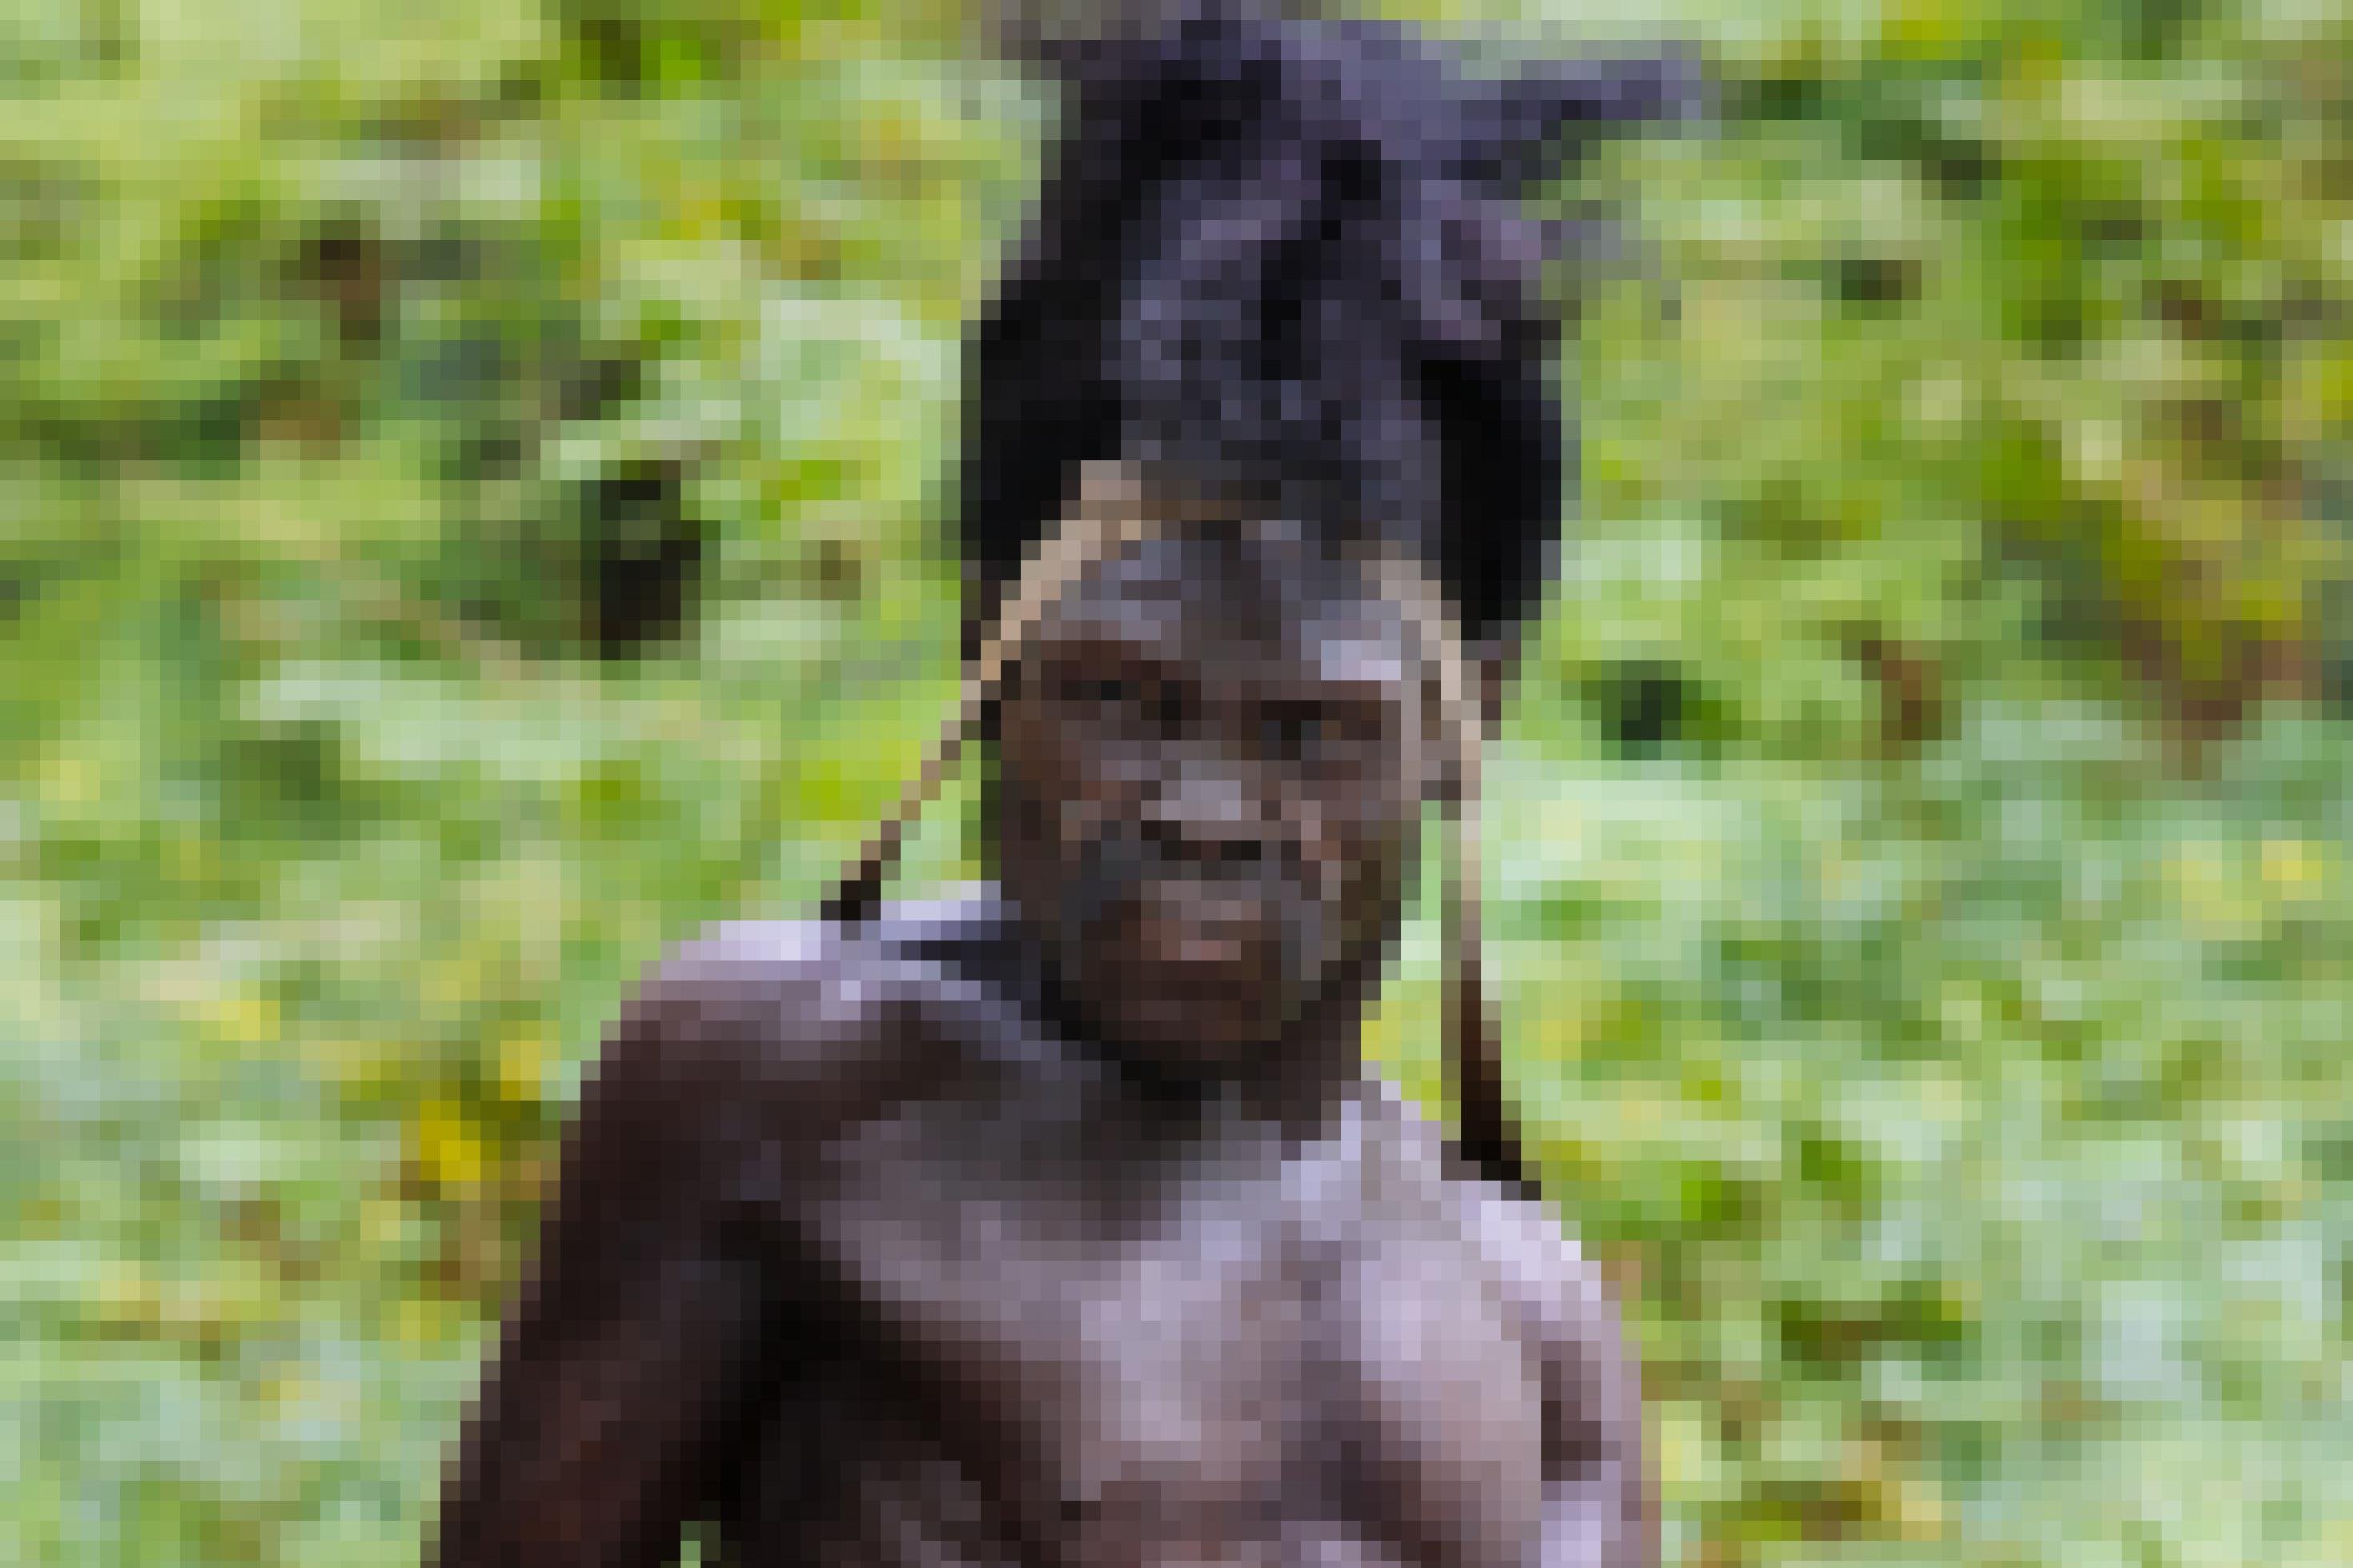 Das Foto zeigt vor grünem Hintergrund den Kopf und Oberkörper eines urtümlich wirkenden Mannes mit dunkler Hautfarbe, der dichtes, hoch aufstehendes gekräuseltes Haar besitzt und eine Art Stirnband trägt.